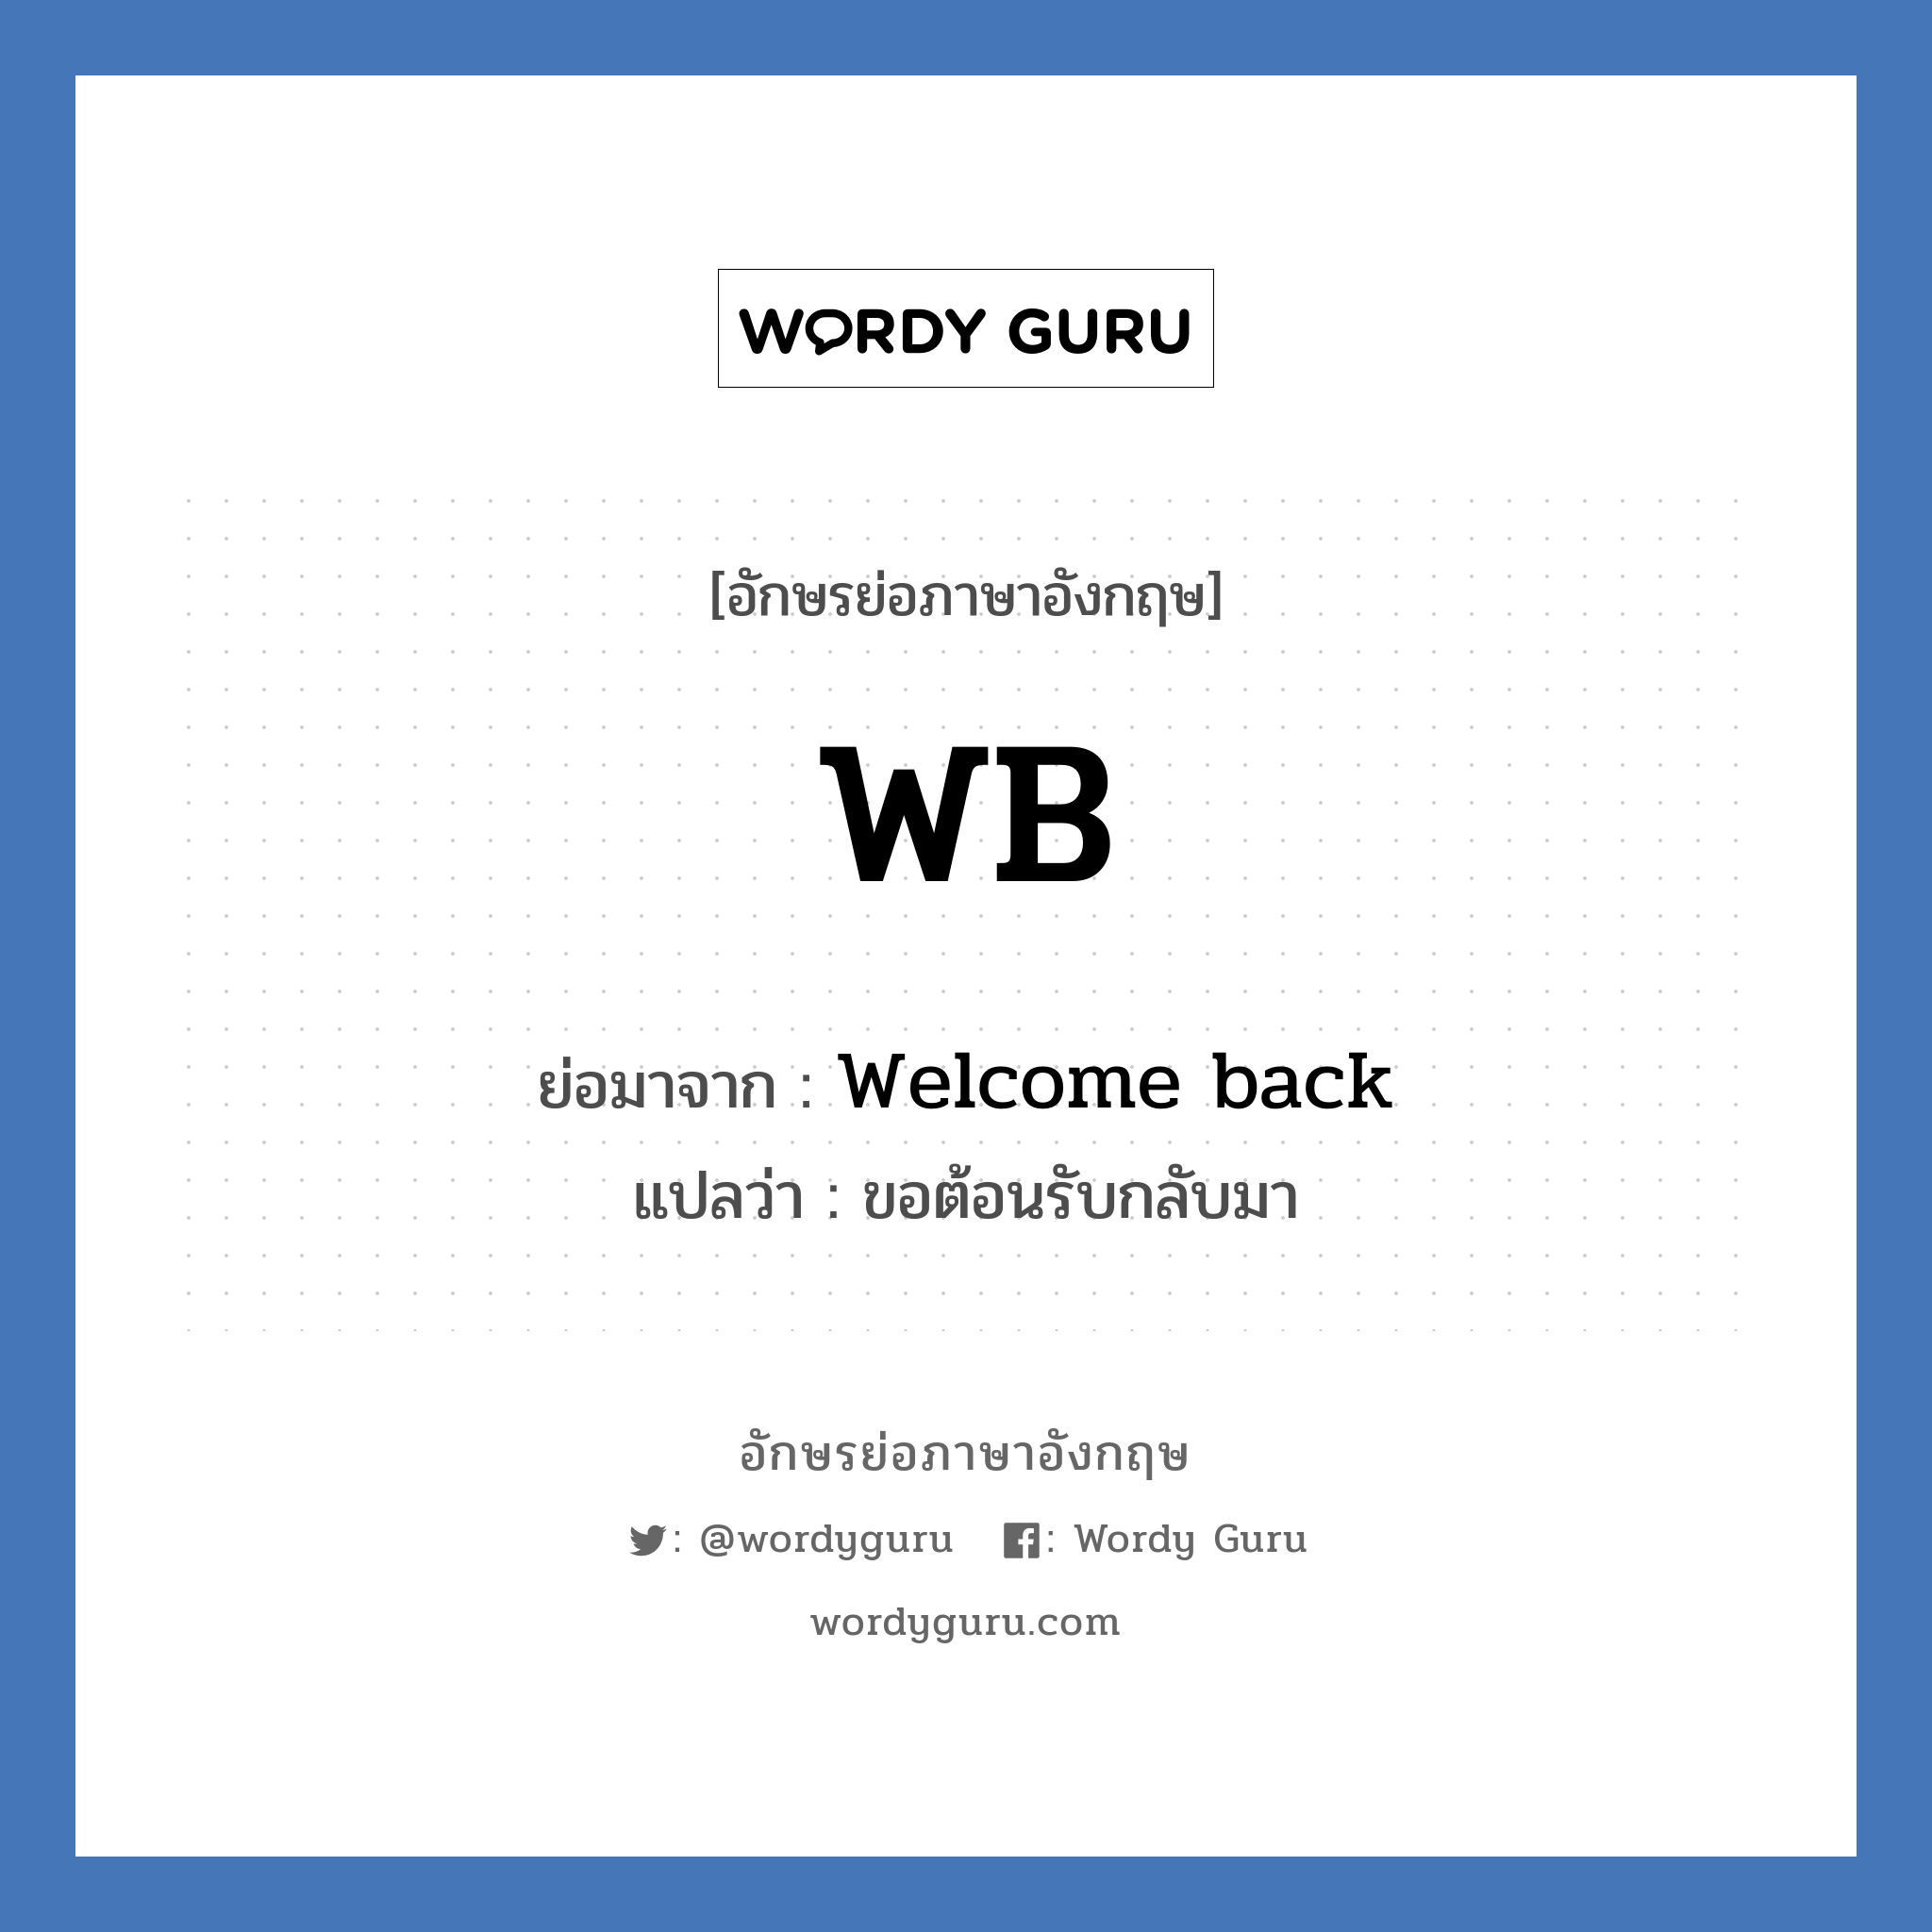 WB ย่อมาจาก? แปลว่า?, อักษรย่อภาษาอังกฤษ WB ย่อมาจาก Welcome back แปลว่า ขอต้อนรับกลับมา